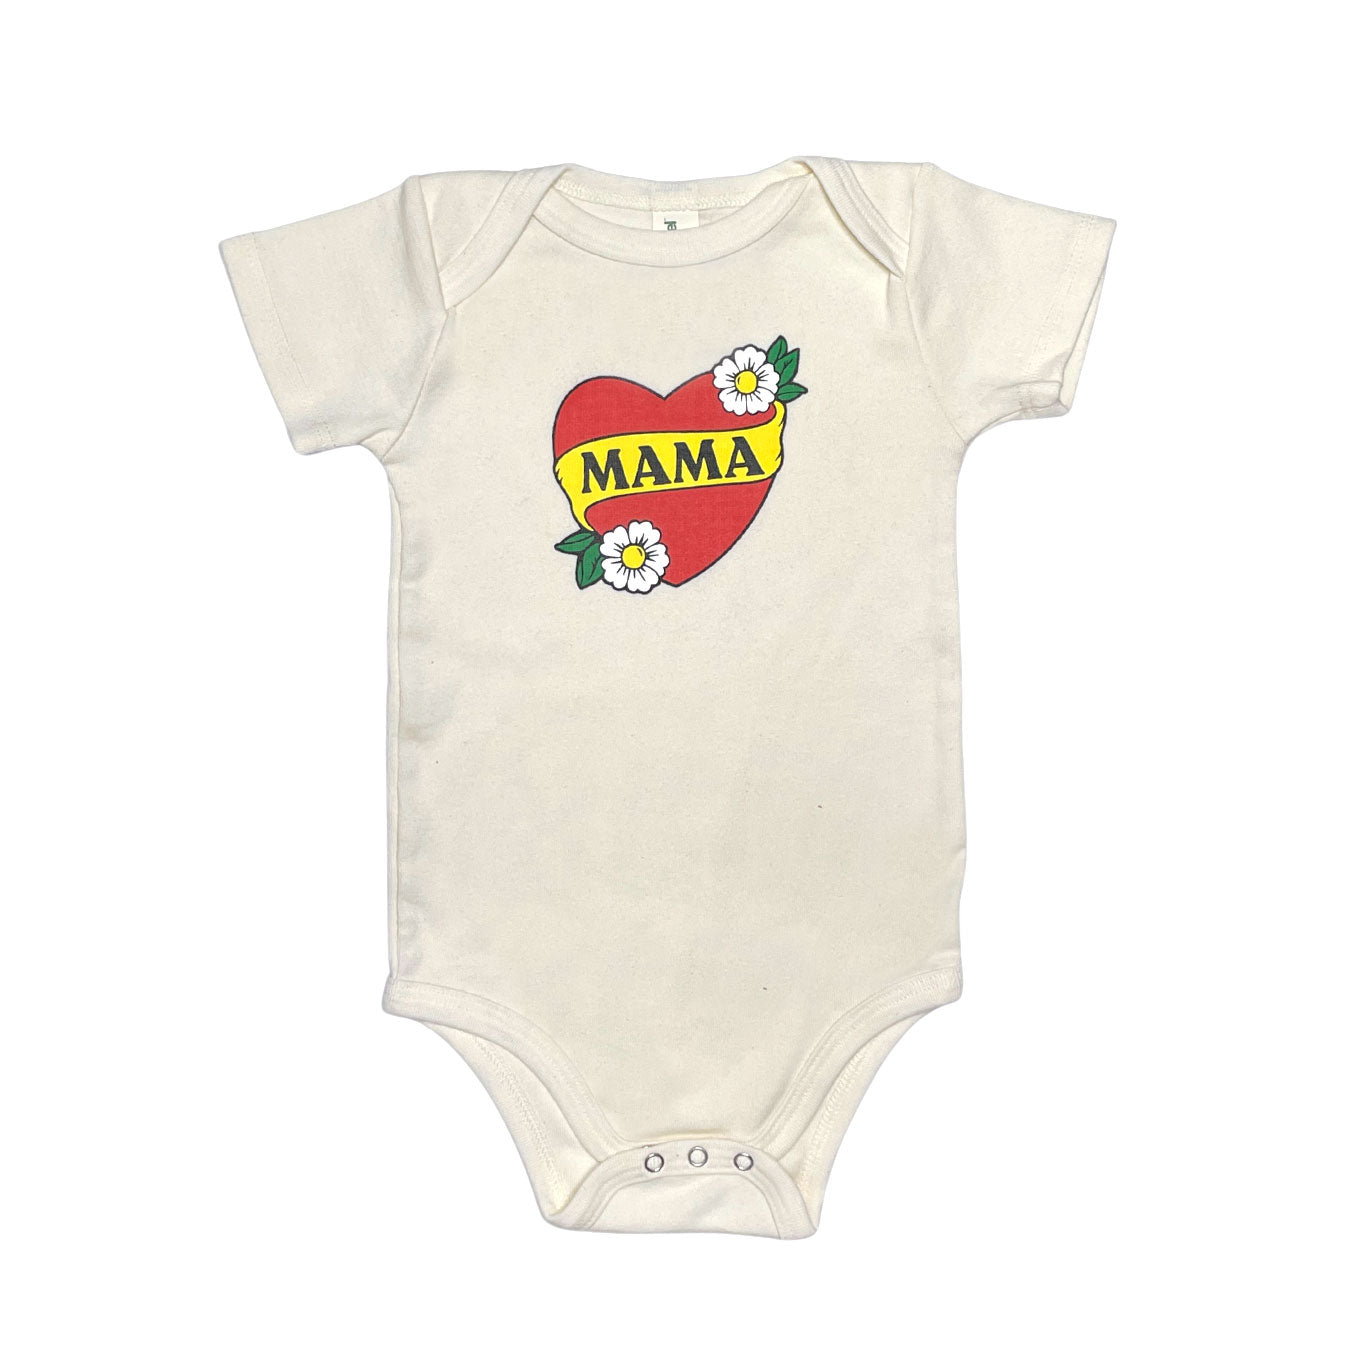 Mama Heart Bodysuit - HoneyBug 